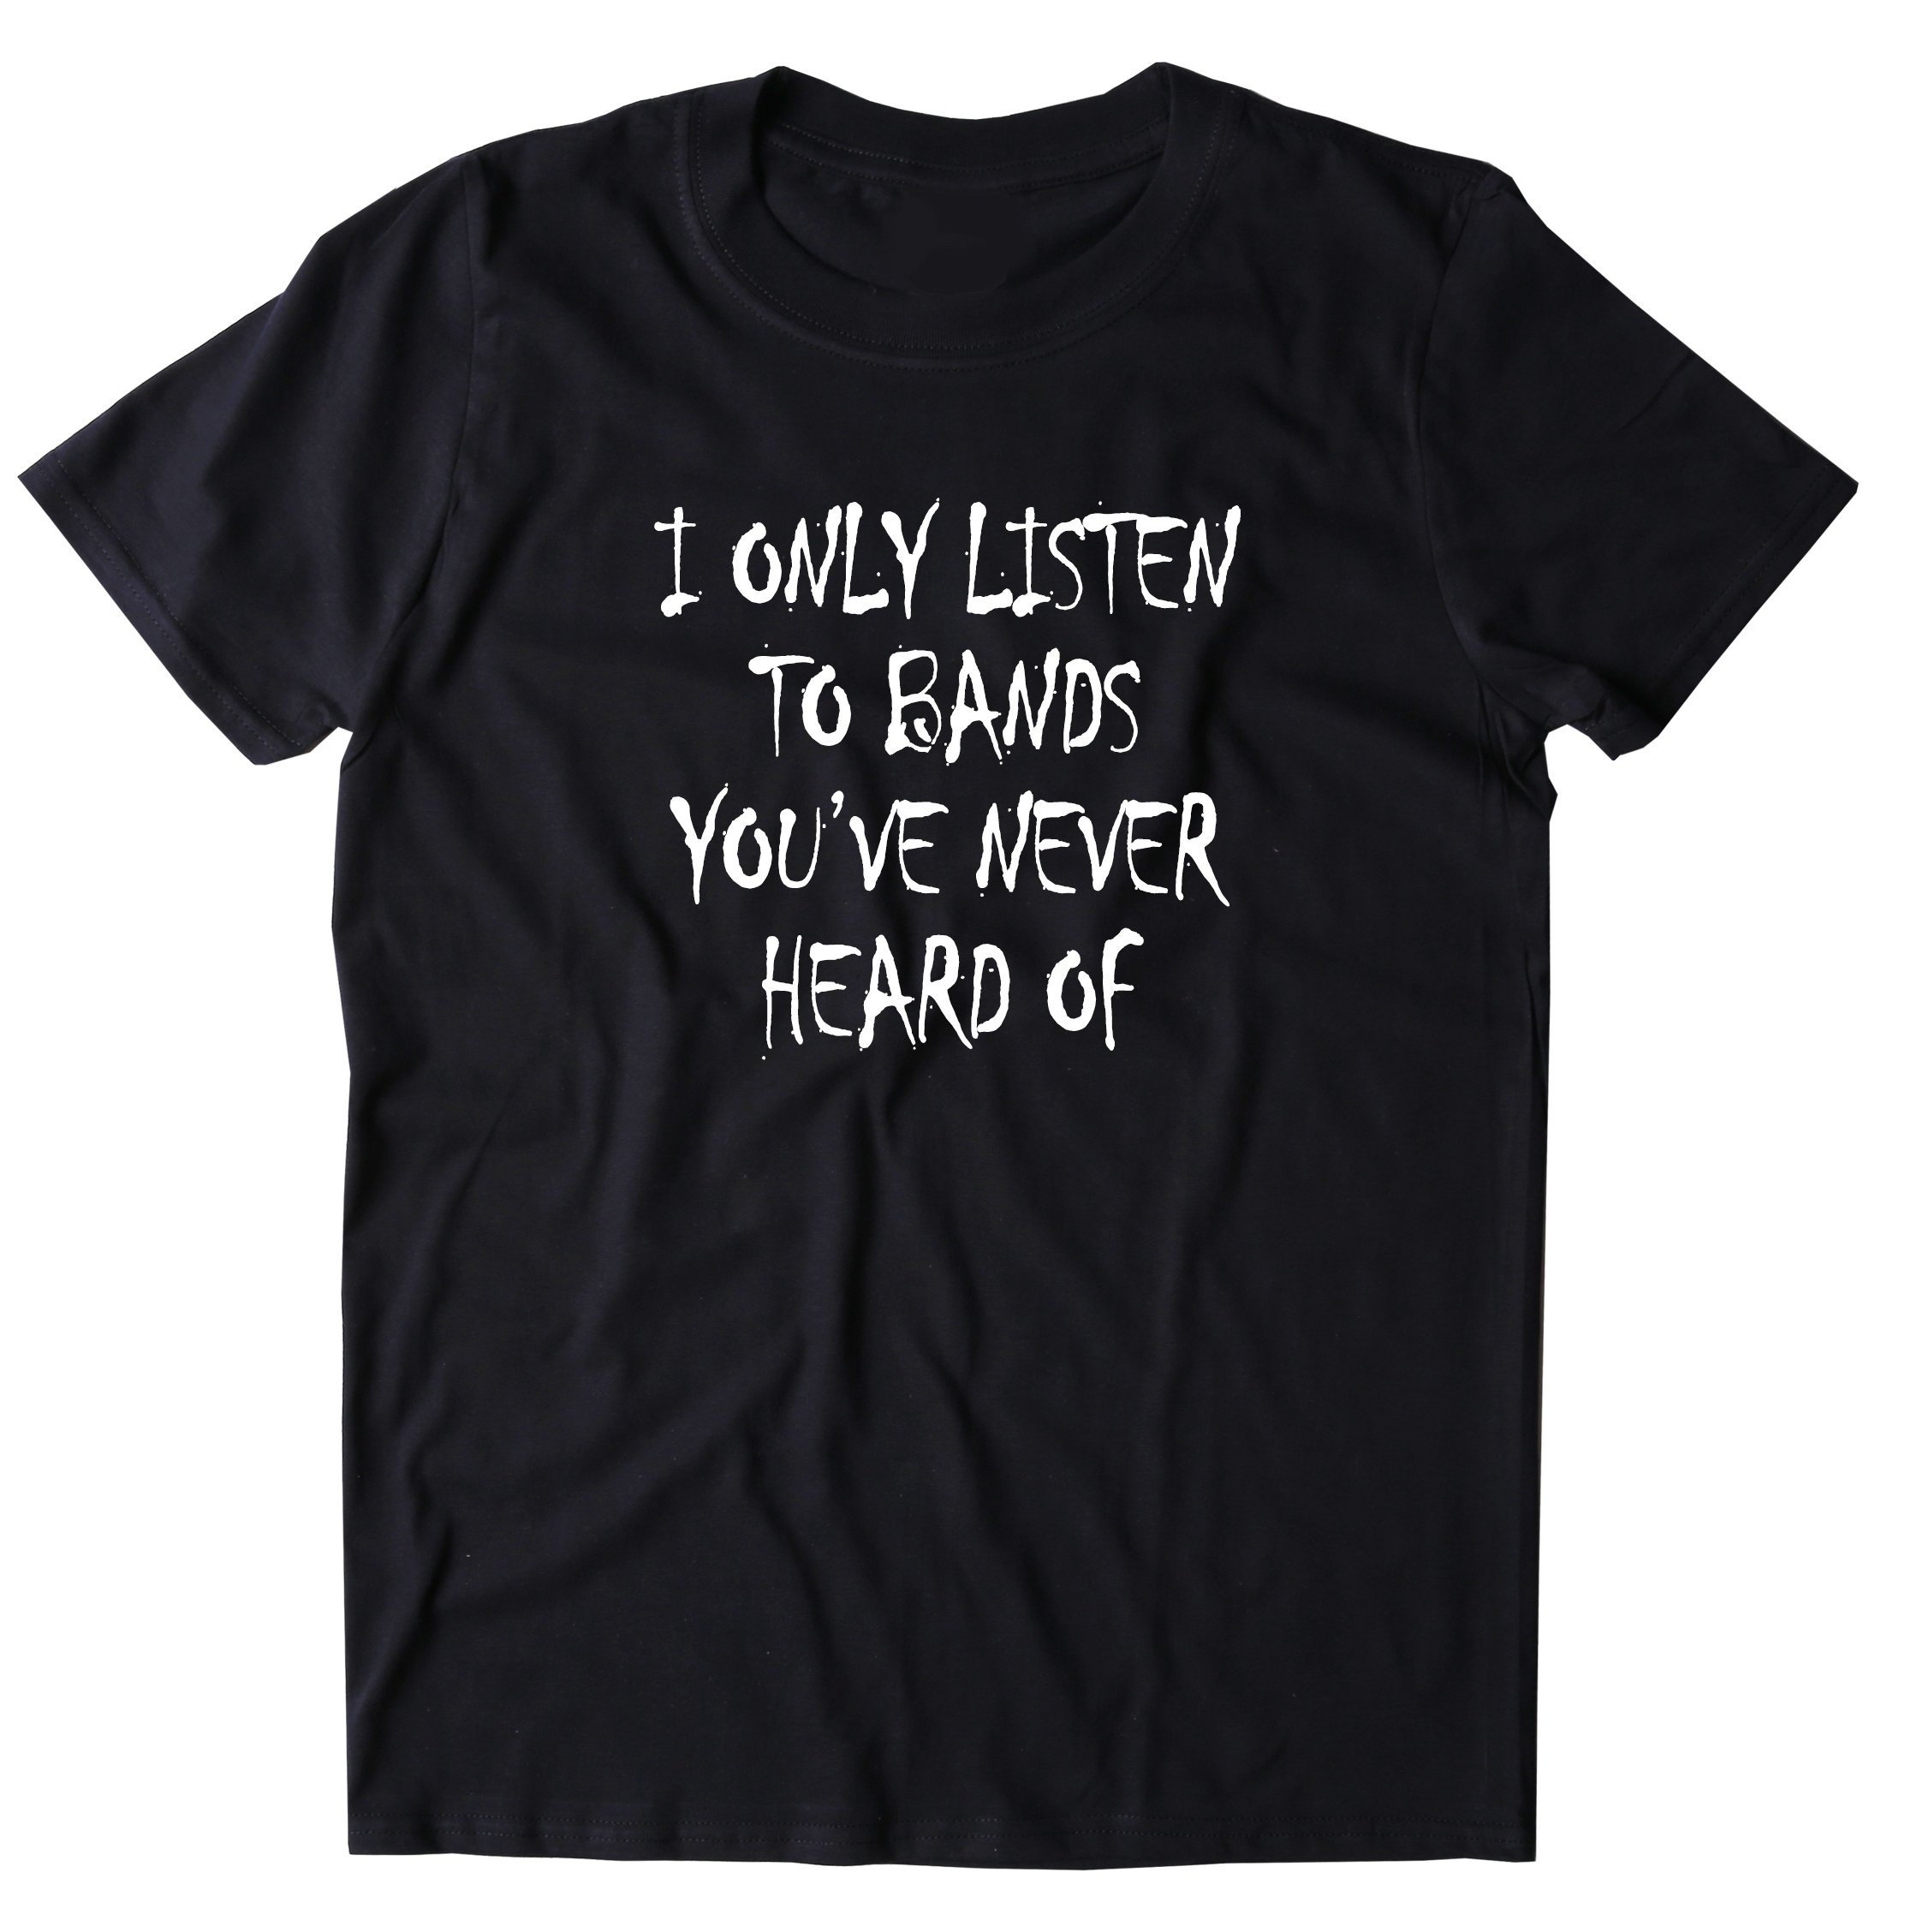 I Only Listen to Bands You've Never Heard Of t-shirt music gift drummer shirt musical shirt music tshirt music shirt music t shirt